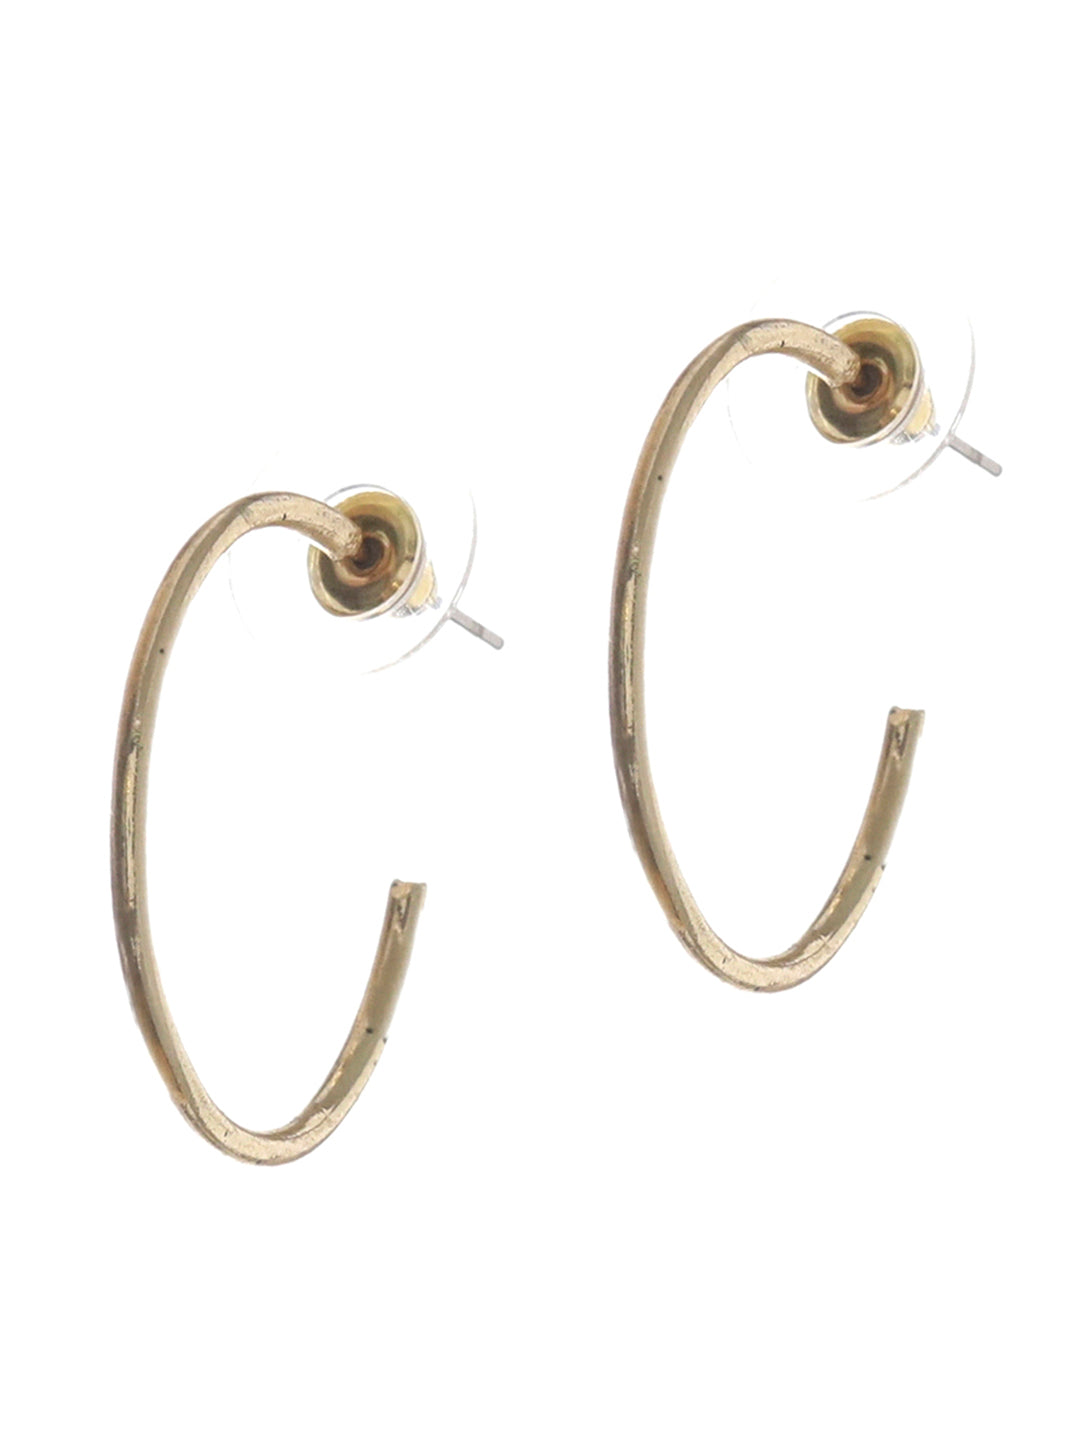 Prita Contemporary Hoop Earrings Set of 3